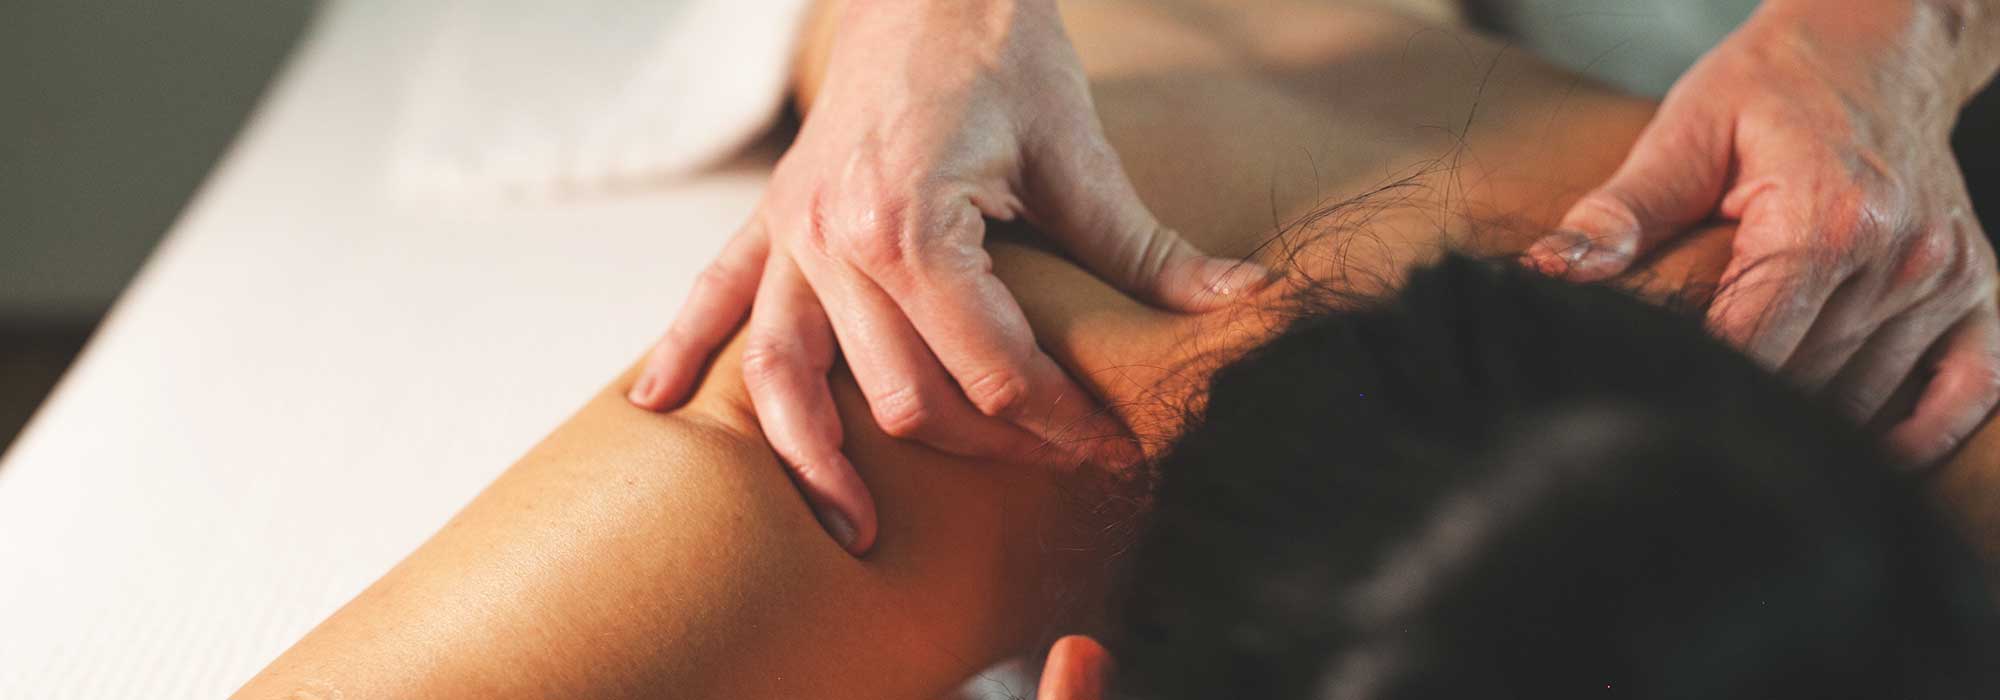 Massagem: terapias de bem-estar